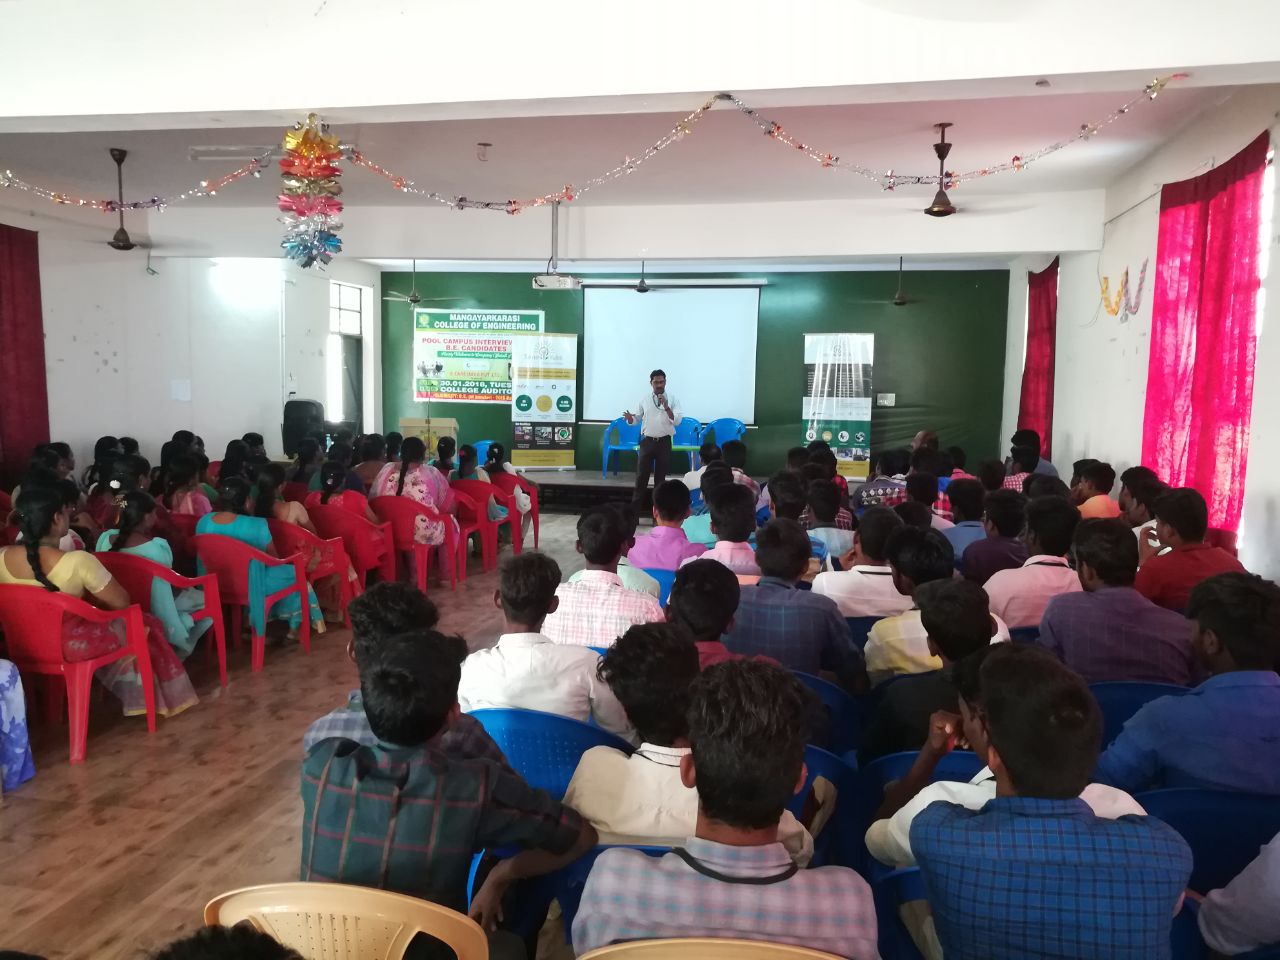 Sona Yukti’s soft skills training workshop at Mangayarkarasi College of Engineering, Madurai